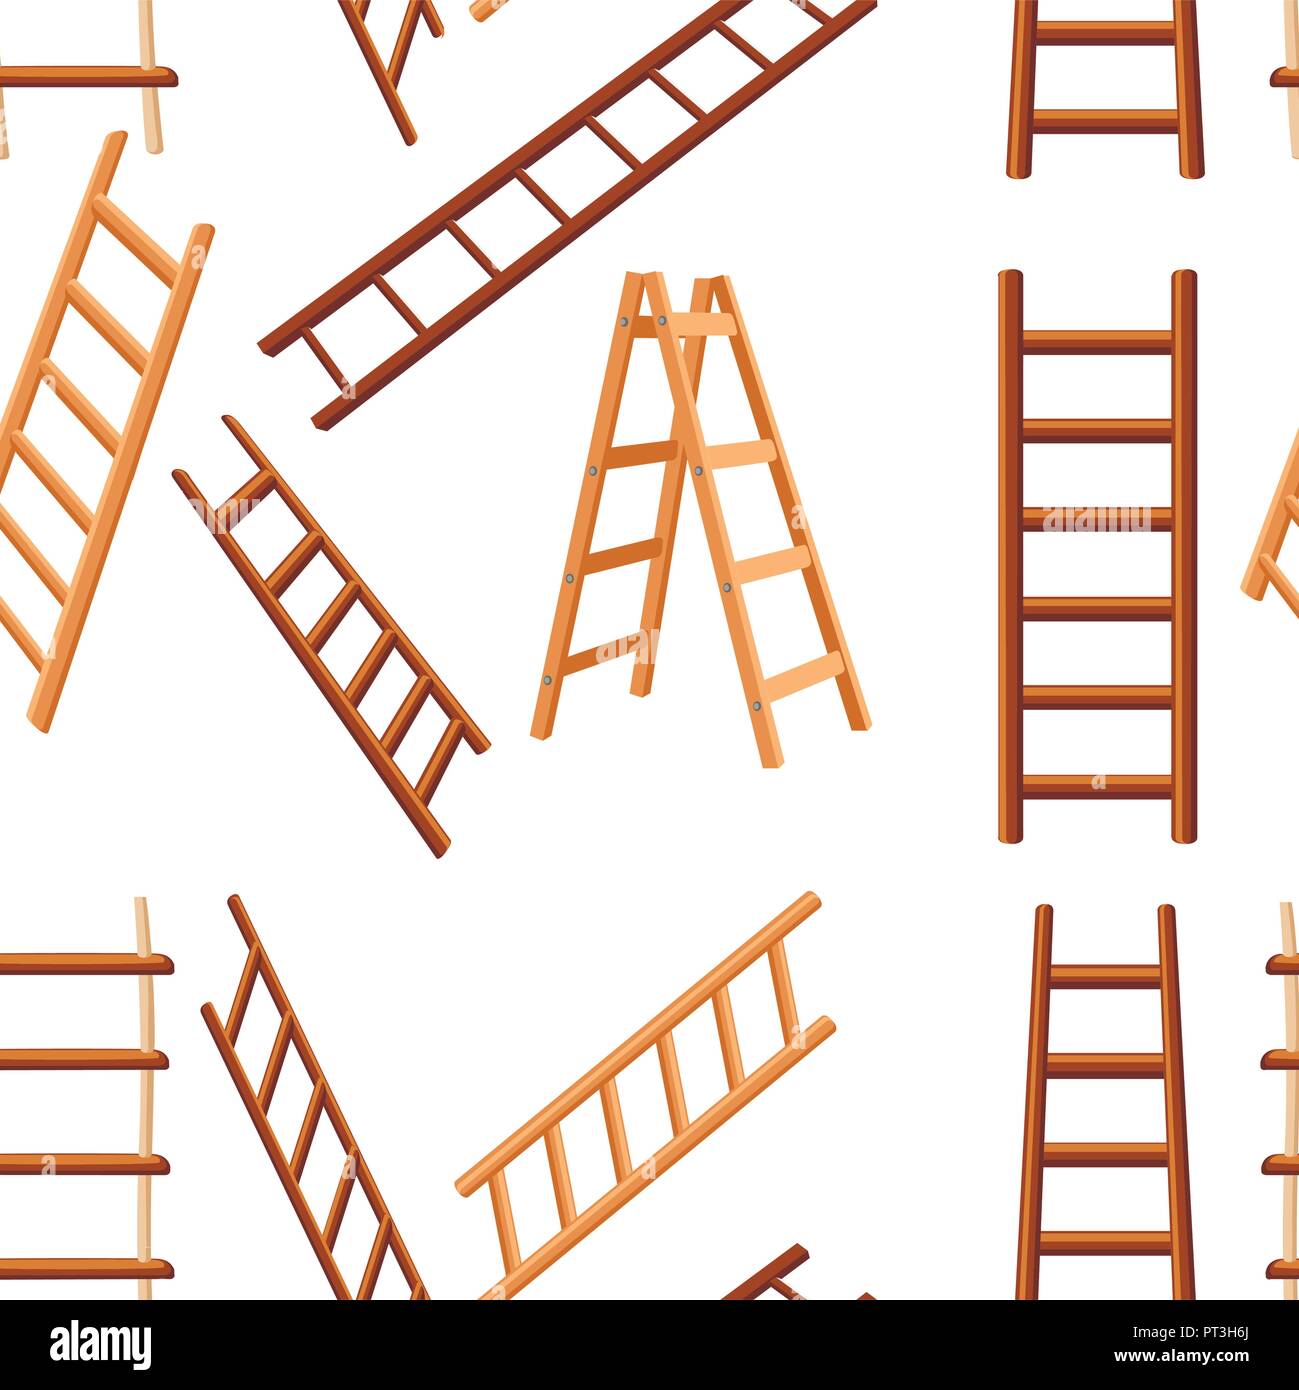 Modello senza giunture. Raccolta di scale in legno. Diversi tipi di scale a gradini. Appartamento illustrazione vettoriale su sfondo bianco. Illustrazione Vettoriale